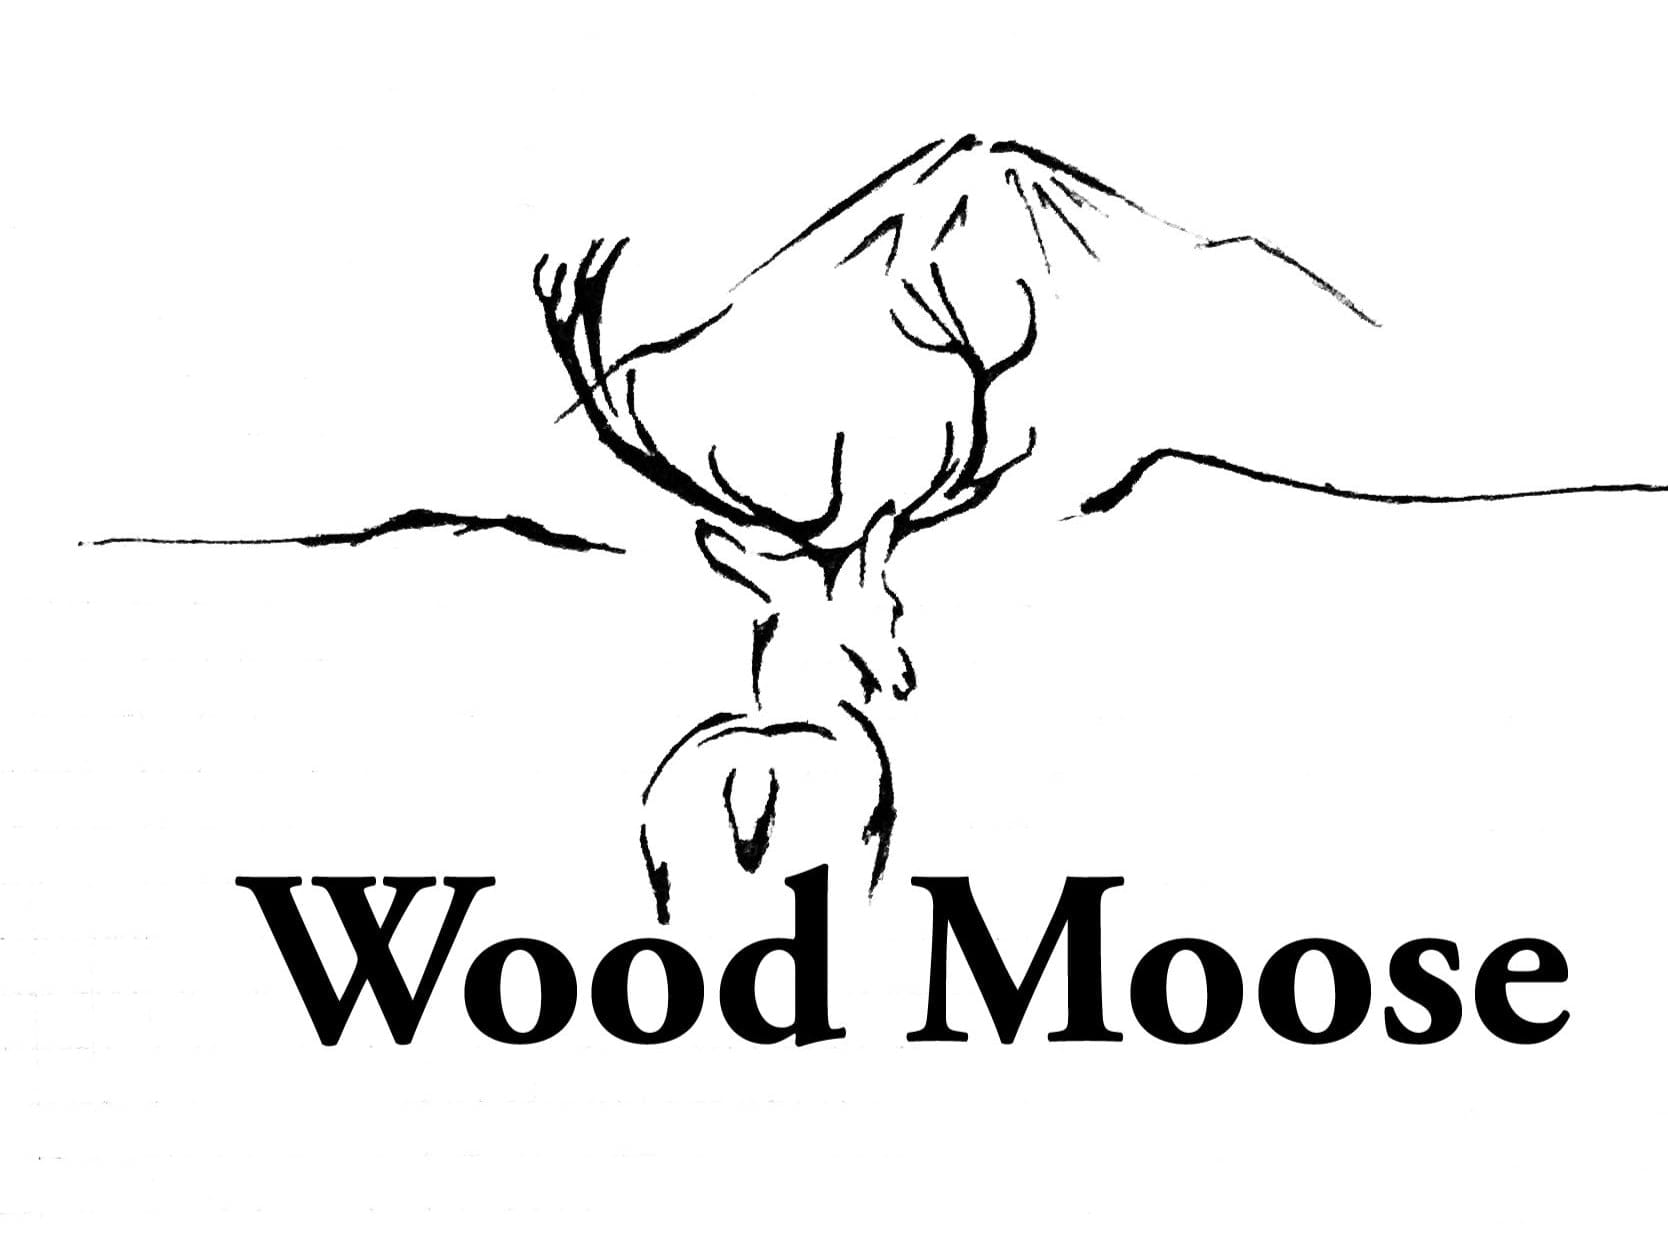 Wood Moose